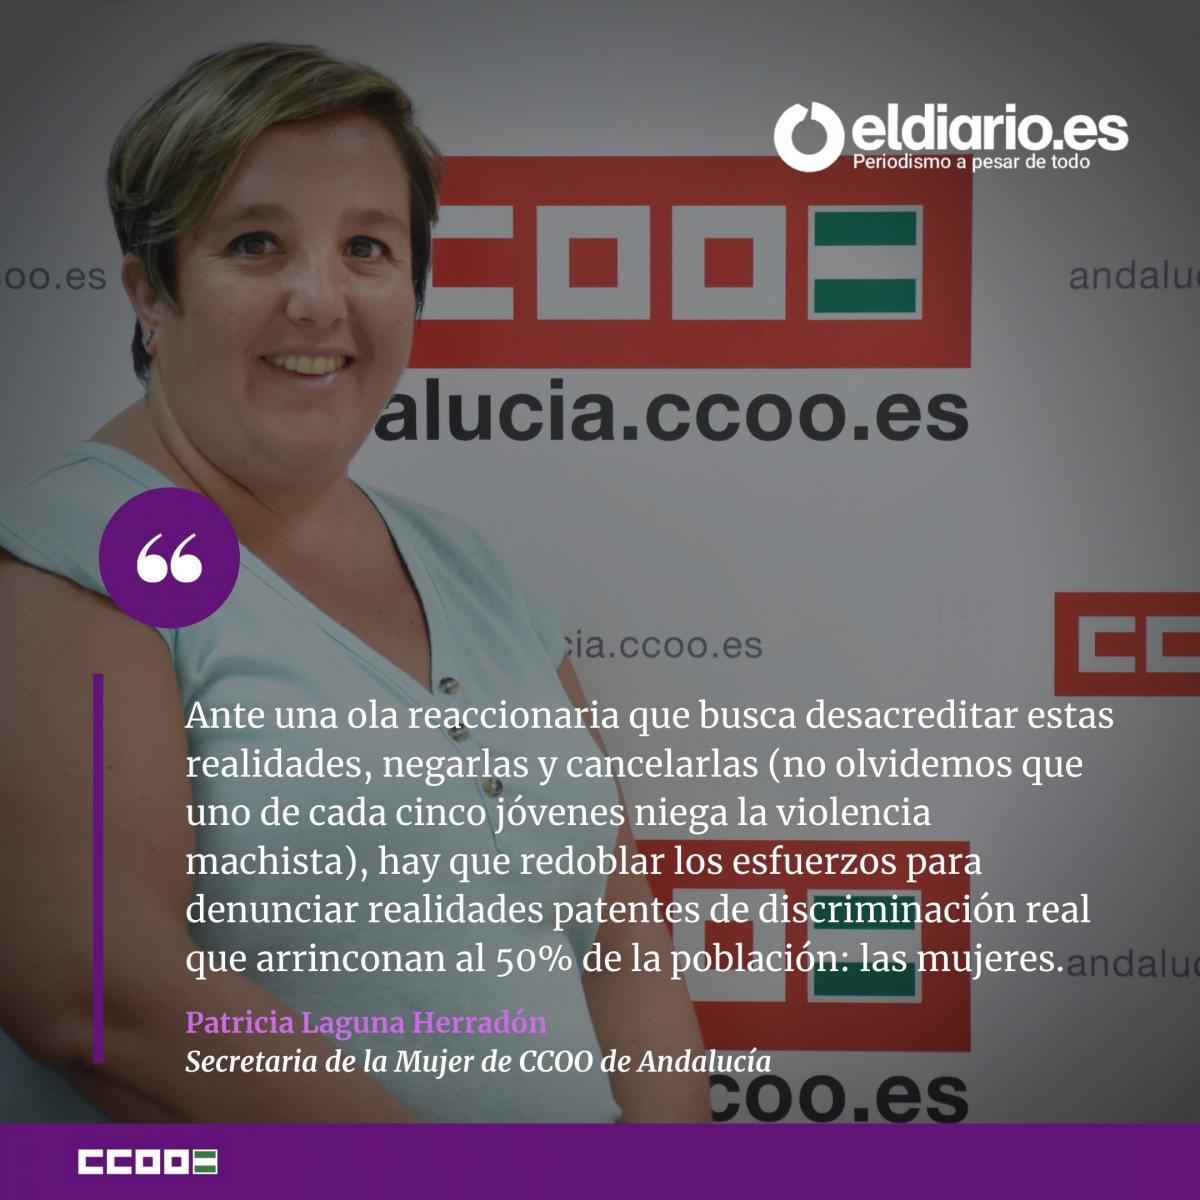 Patricia Laguna, secretaria de la Mujer de CCOO de Andalucía